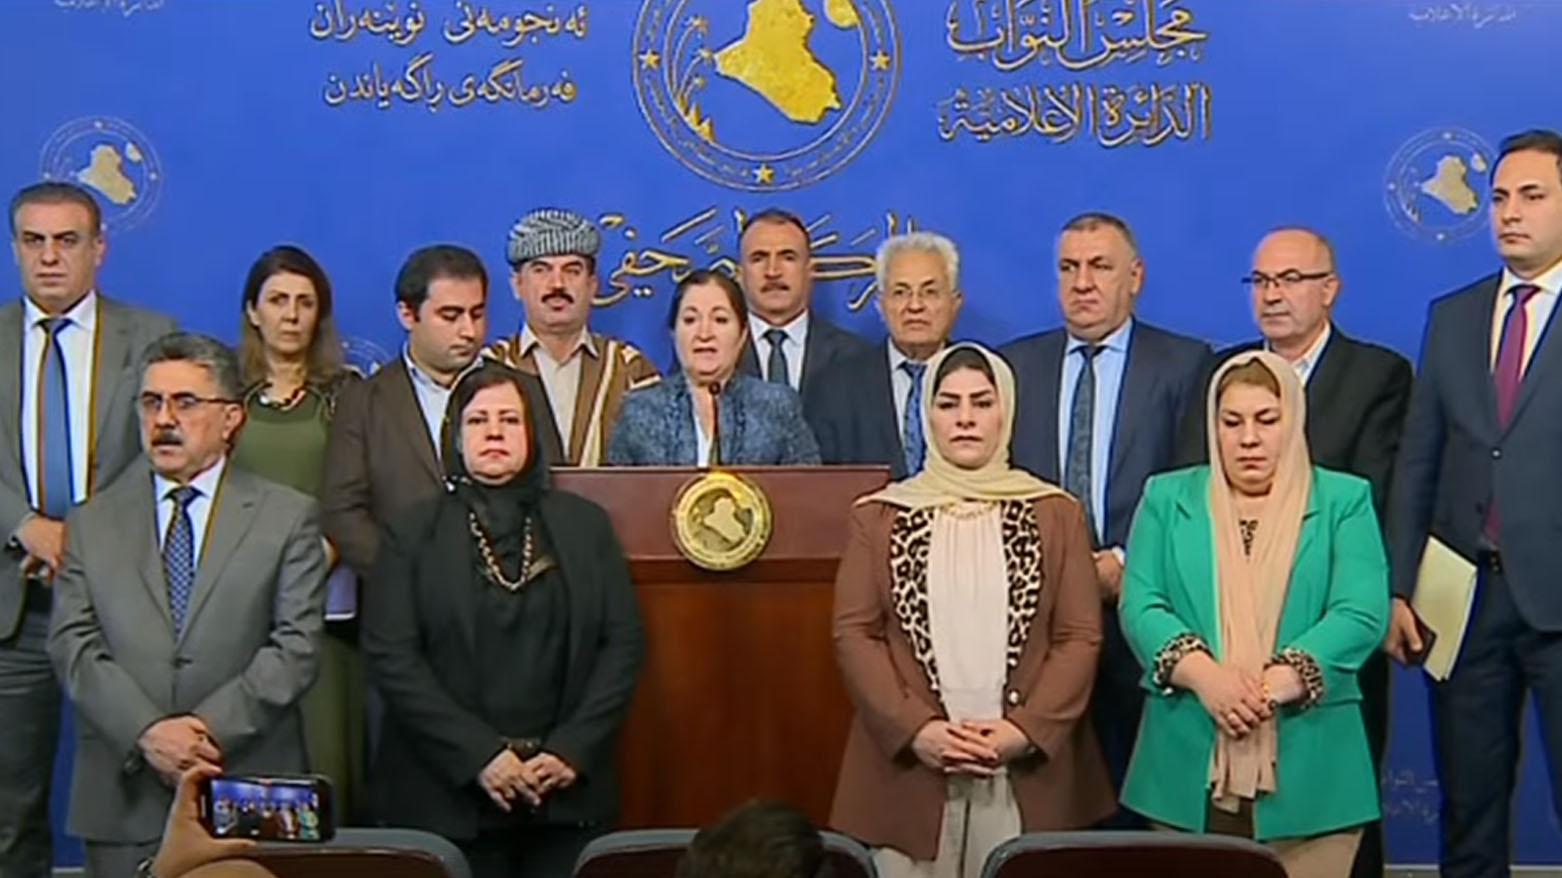 فراکسیون پارت دموکرات کوردستان در مجلس نمایندگان عراق